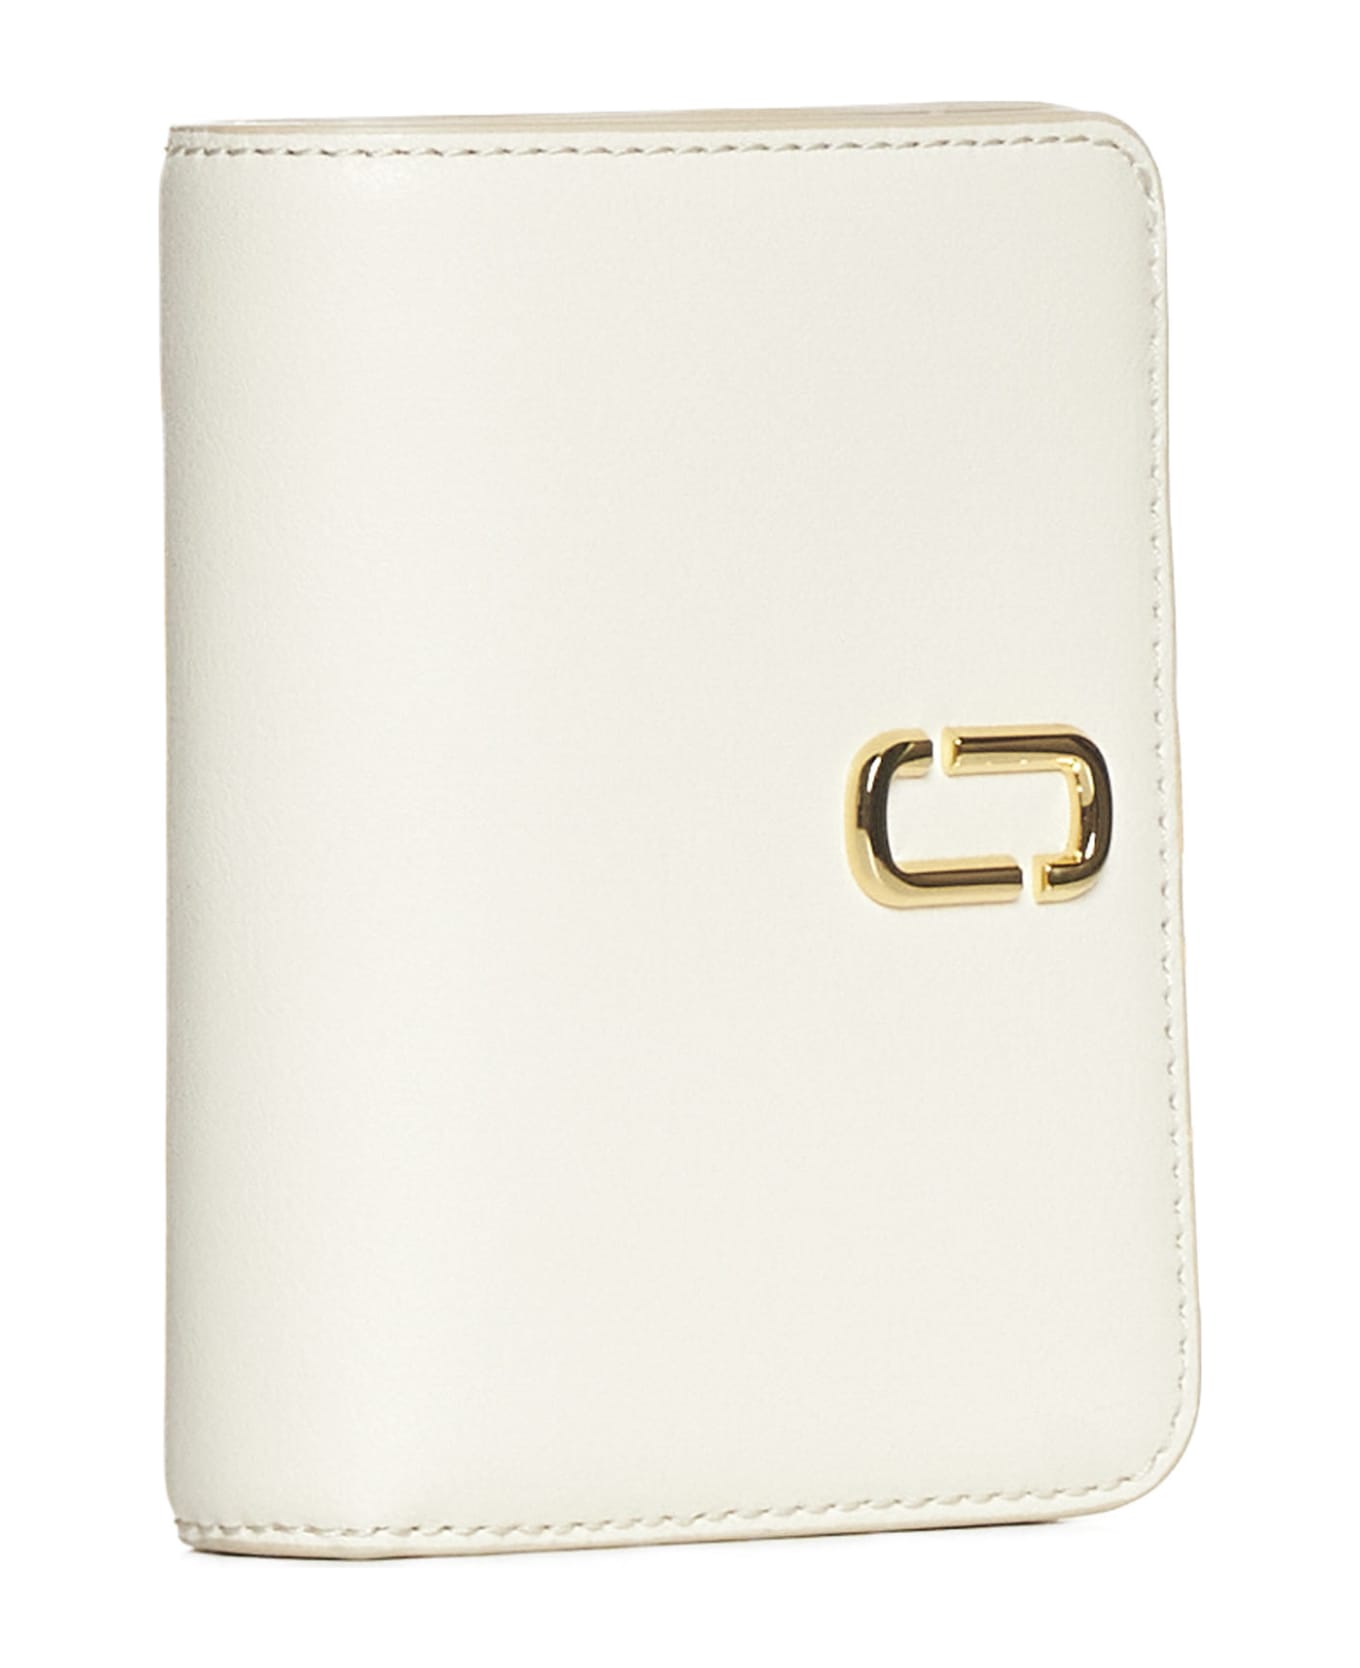 Marc Jacobs Mini Compact Wallet The J Marc - Cloud white 財布